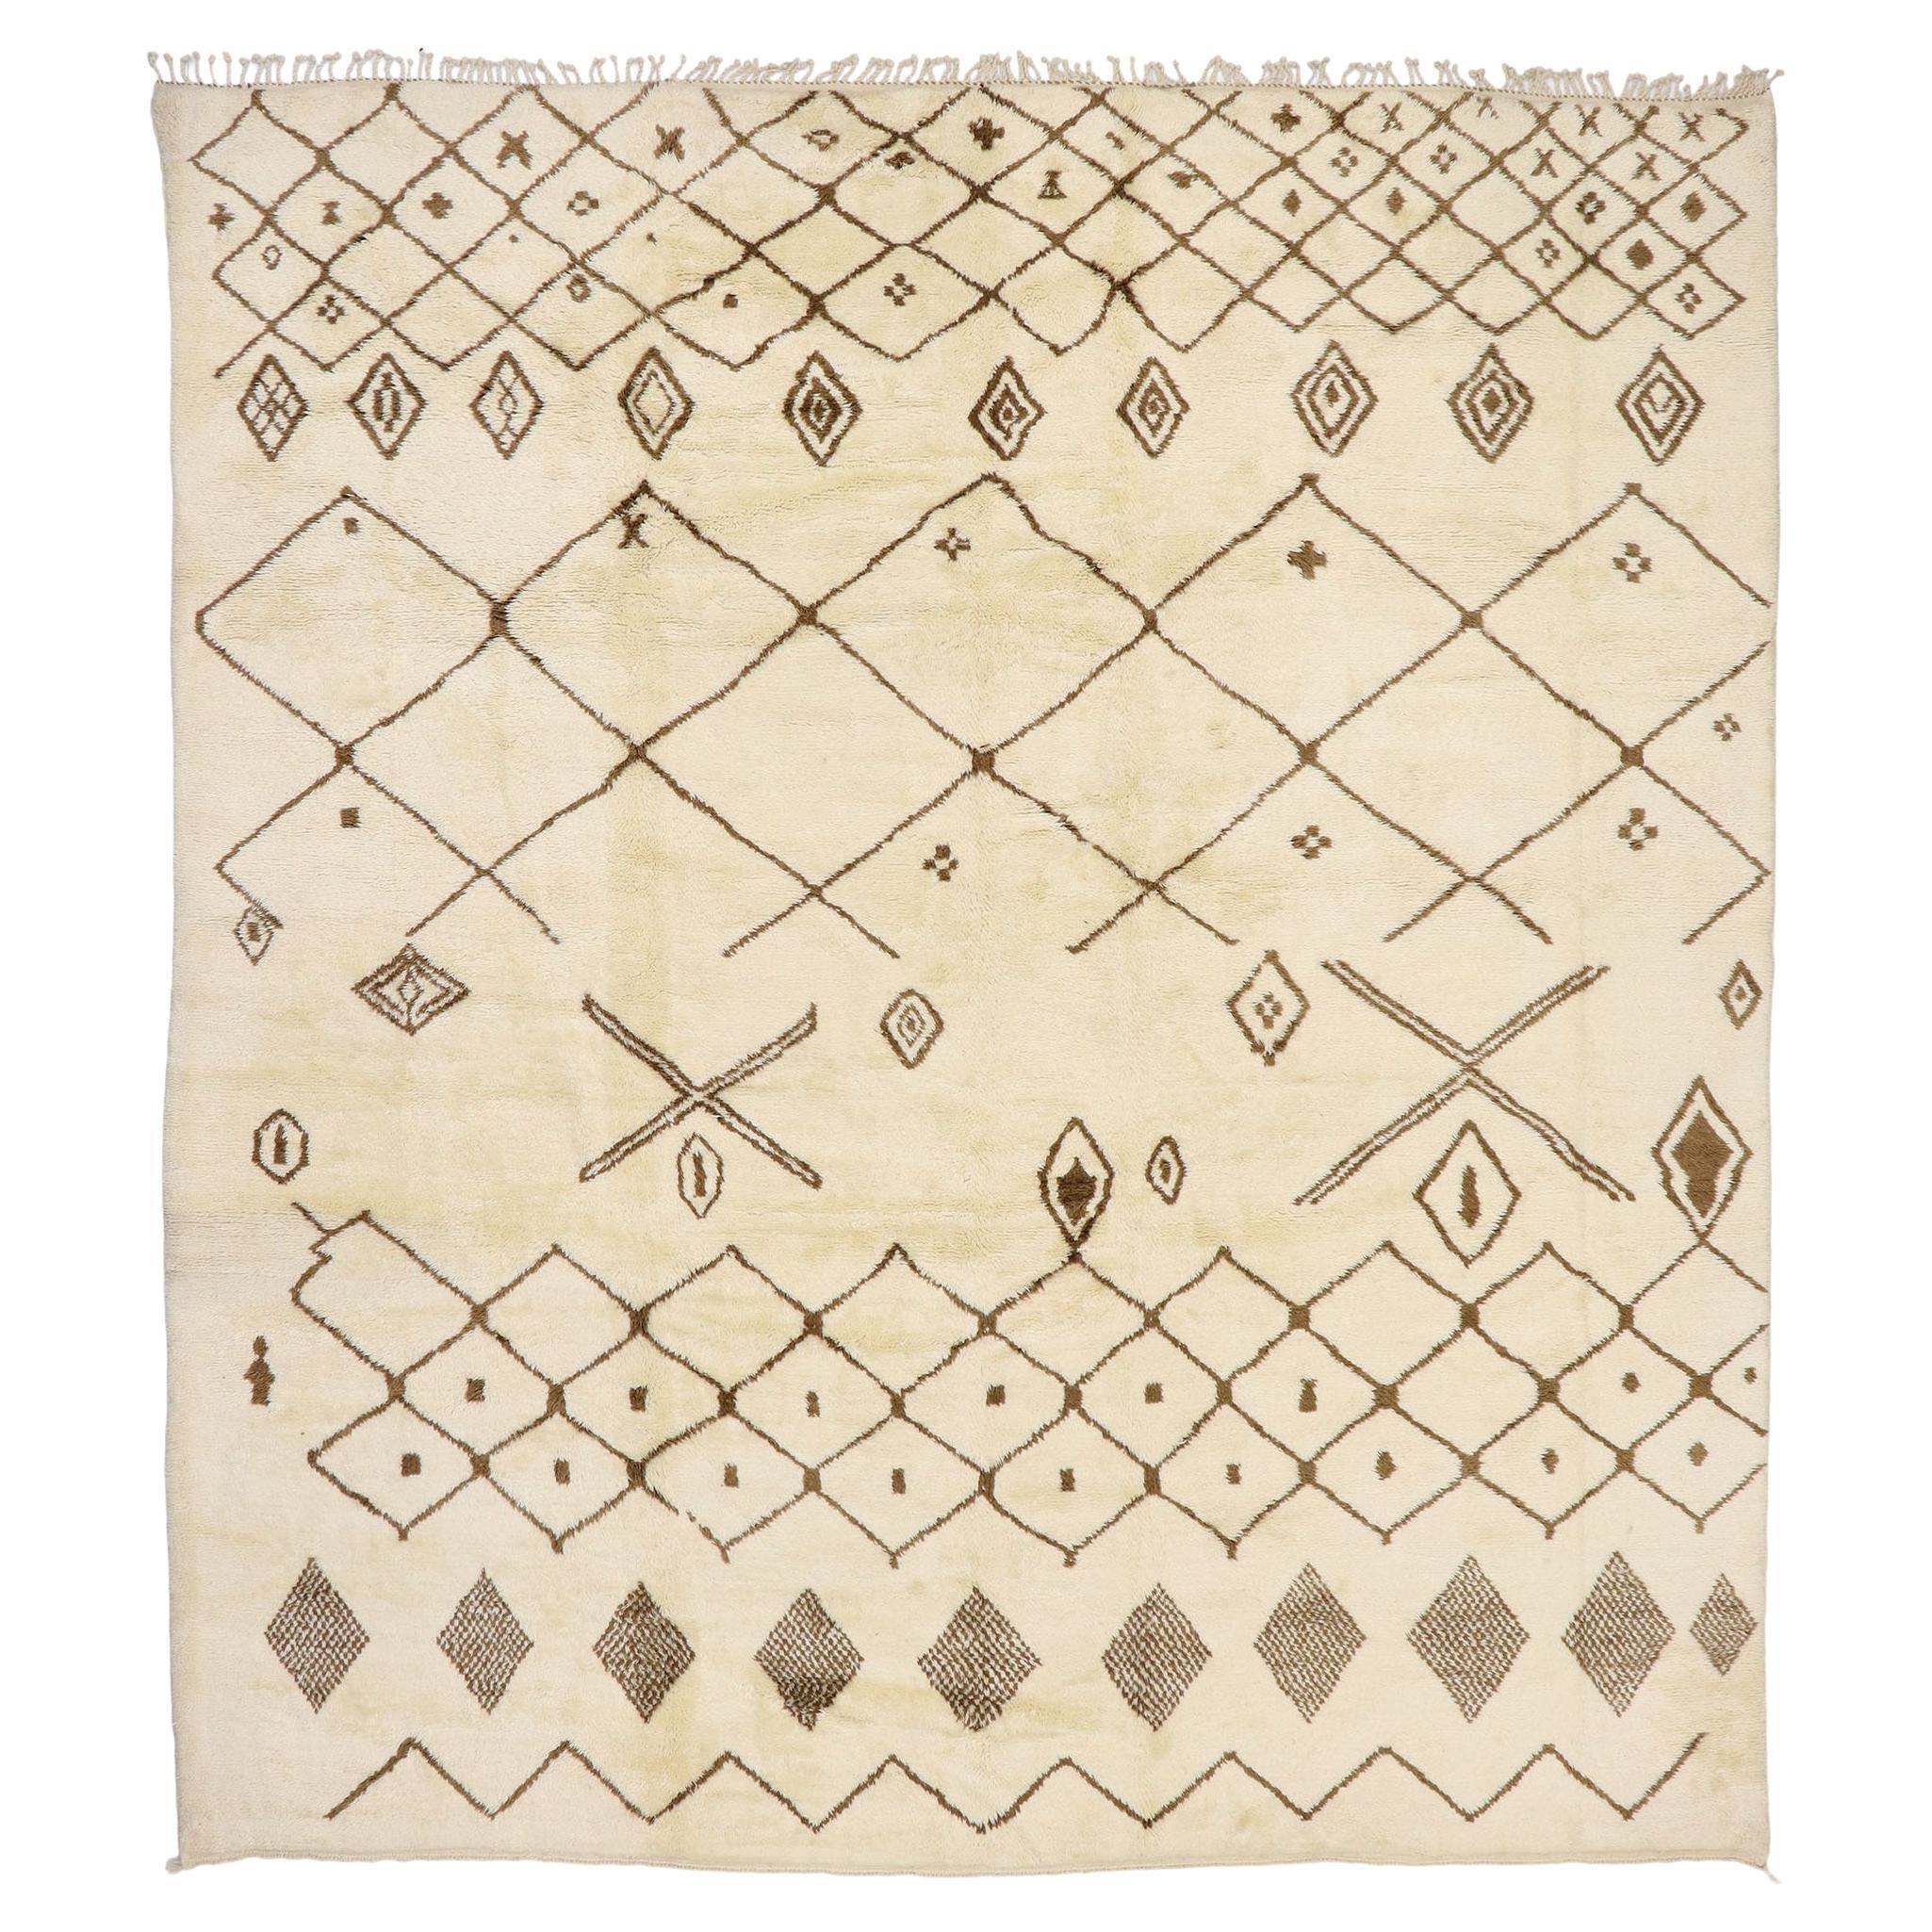 Grand tapis berbère marocain authentique, le confort hygge rencontre le charme nomade en vente